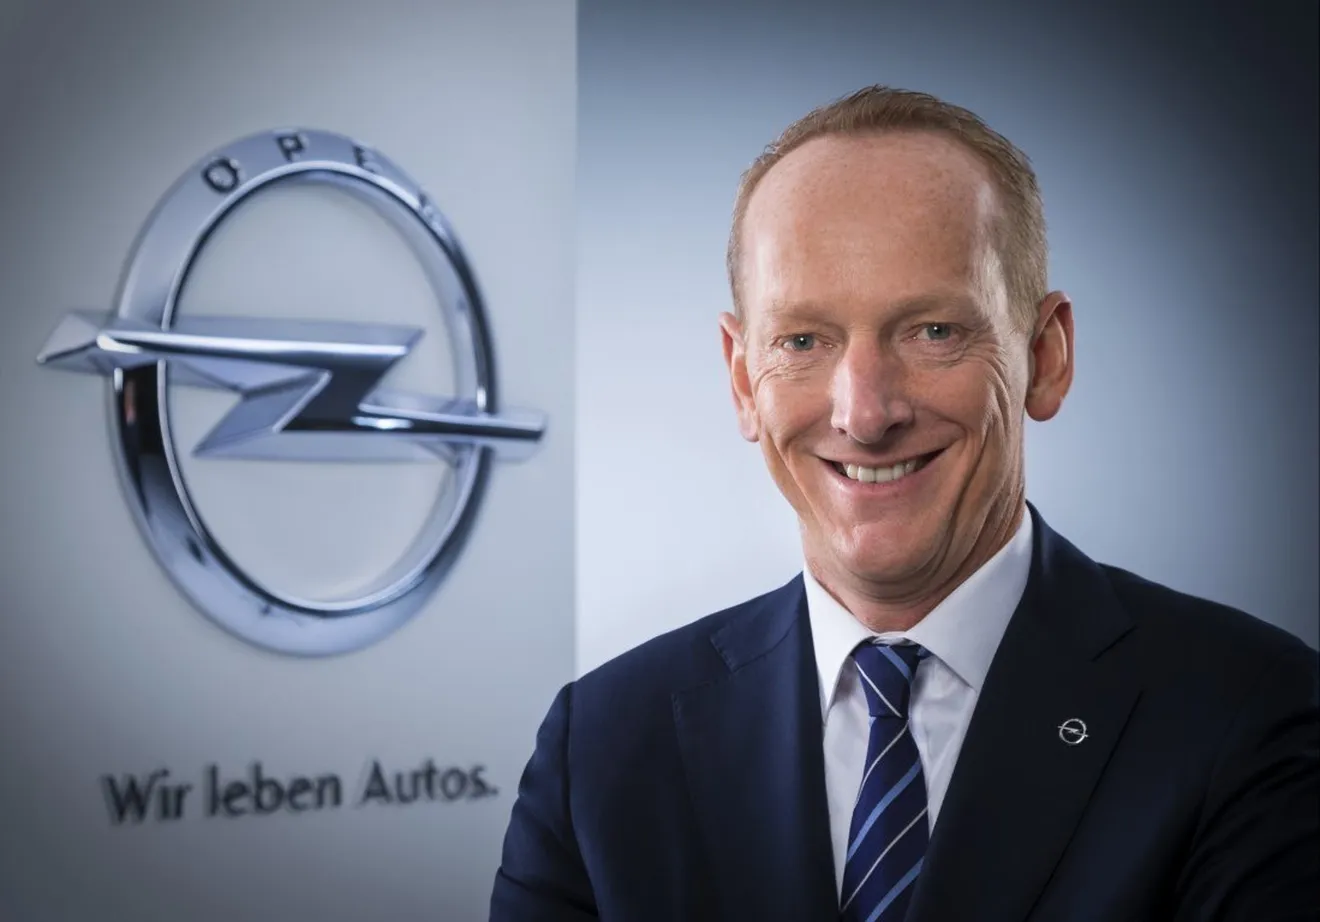 El ex jefe de Opel define el Salón de Frankfurt 2019 como "Un gran fracaso"